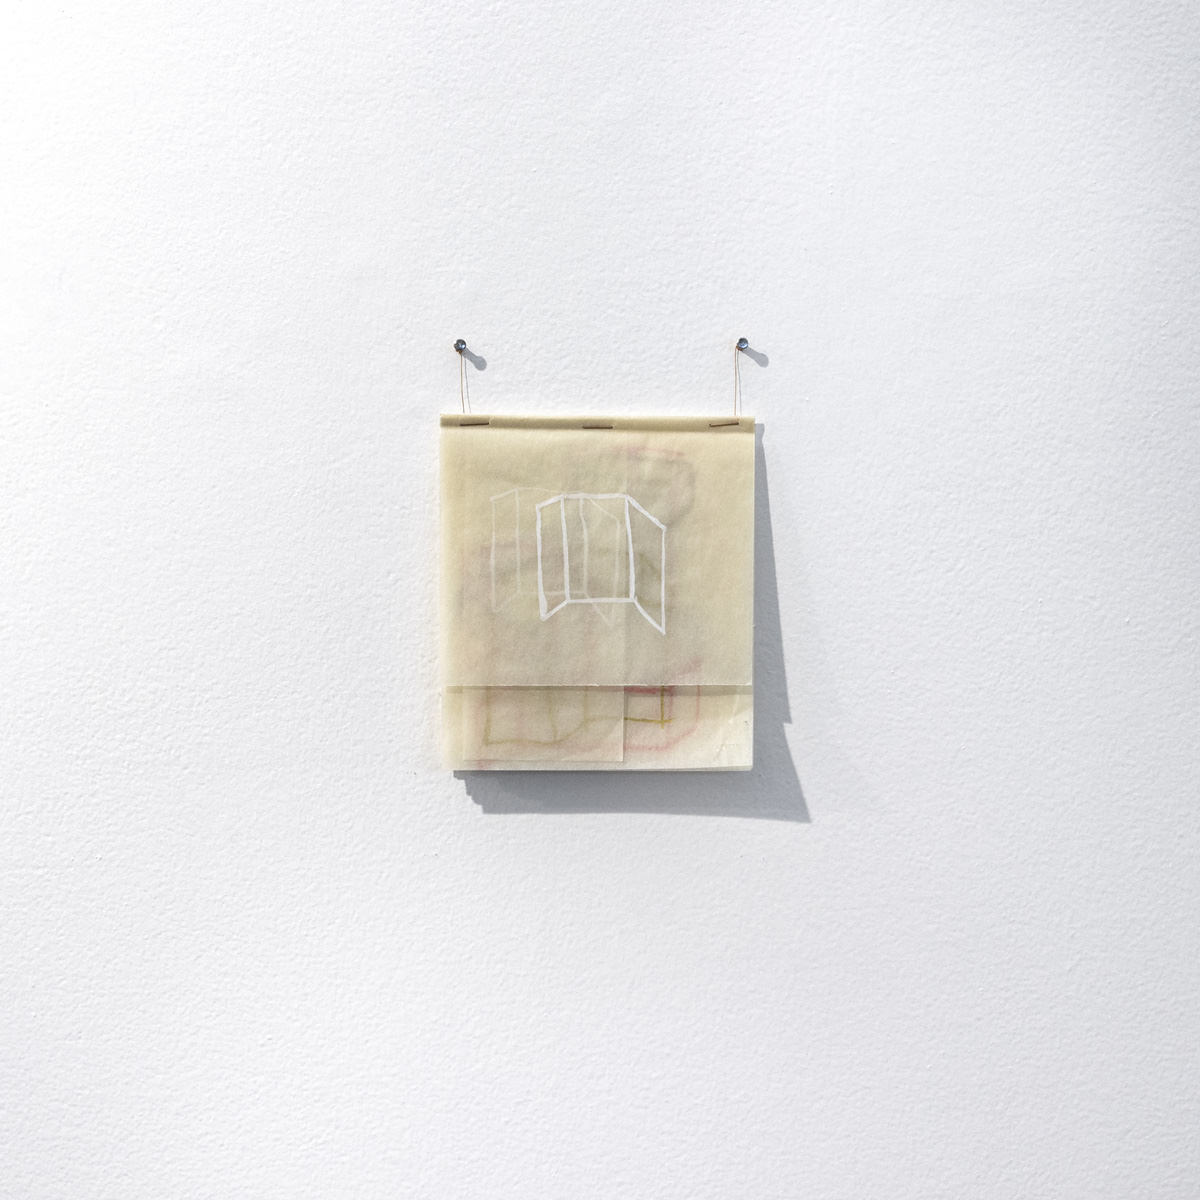 Flávia Ribeiro, Desenho, 2019 - guache e pó de bronze sobre folha dupla de papel croquis - 28,7 x 21 cm. Foto: Divulgação.